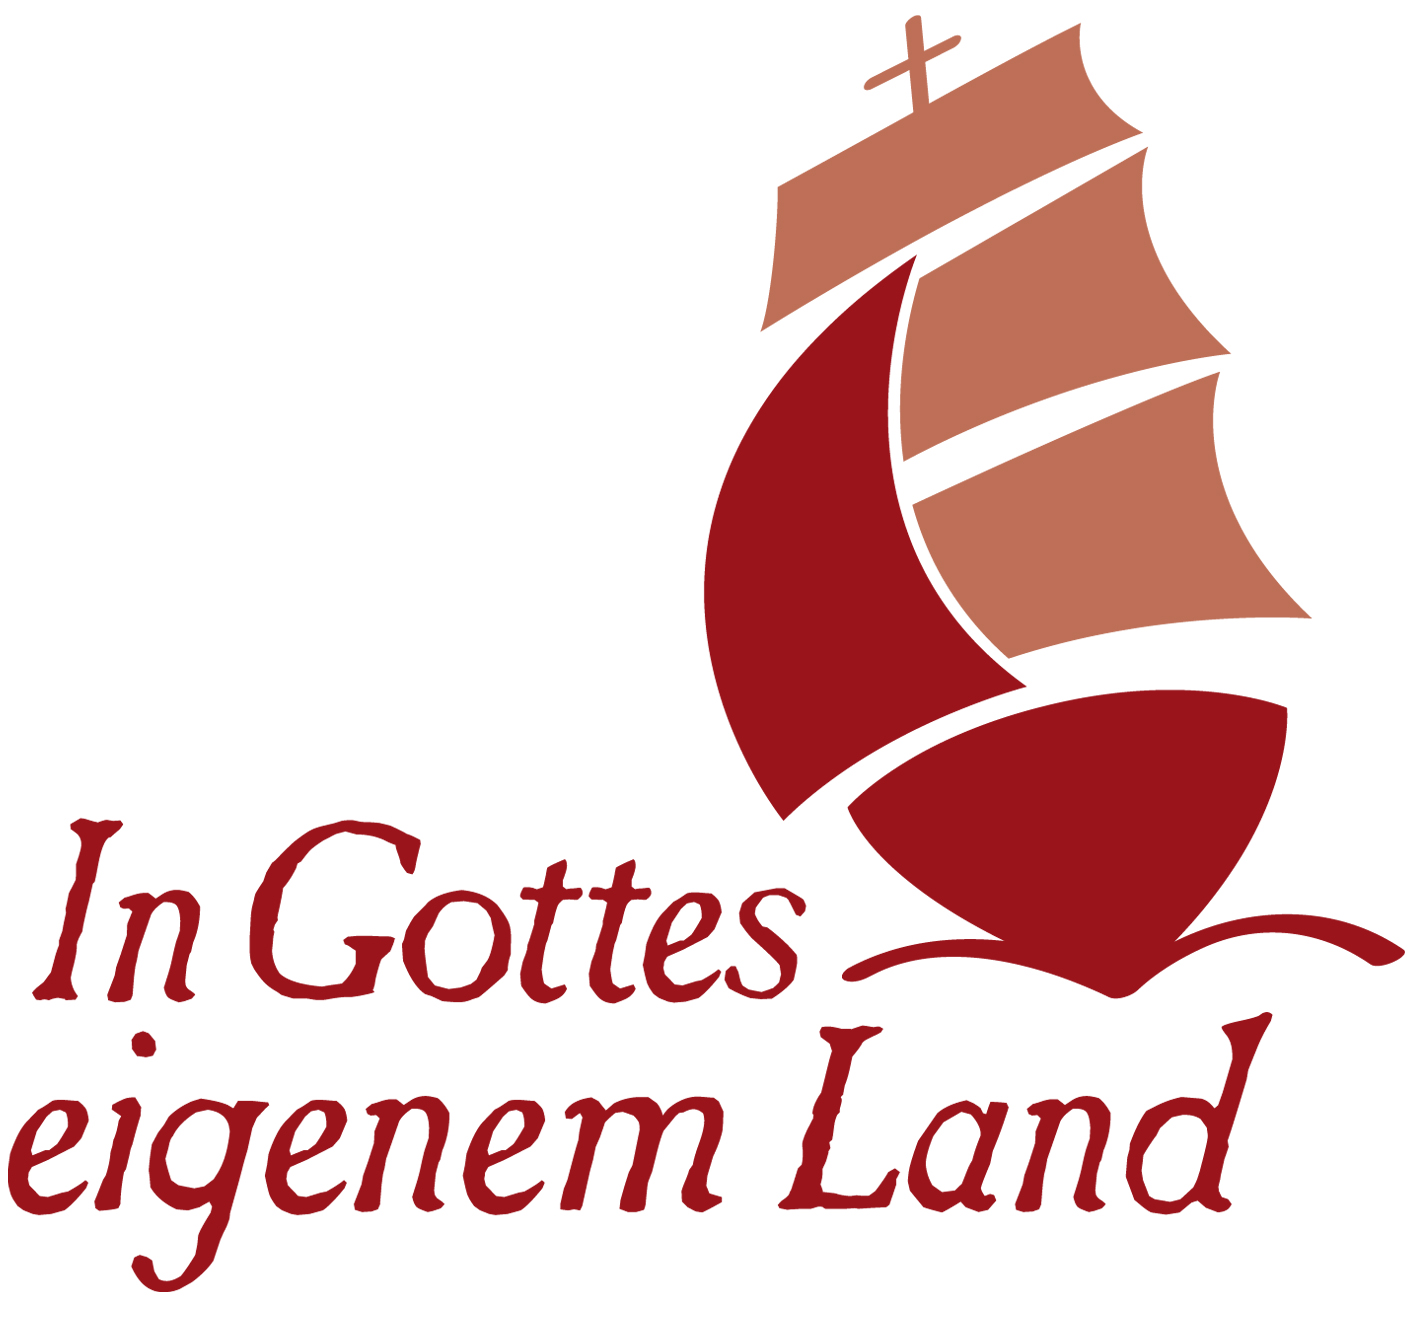 landesbühne Sachsen: Signe für das Theaterstück "In Gottes eigenem Land"